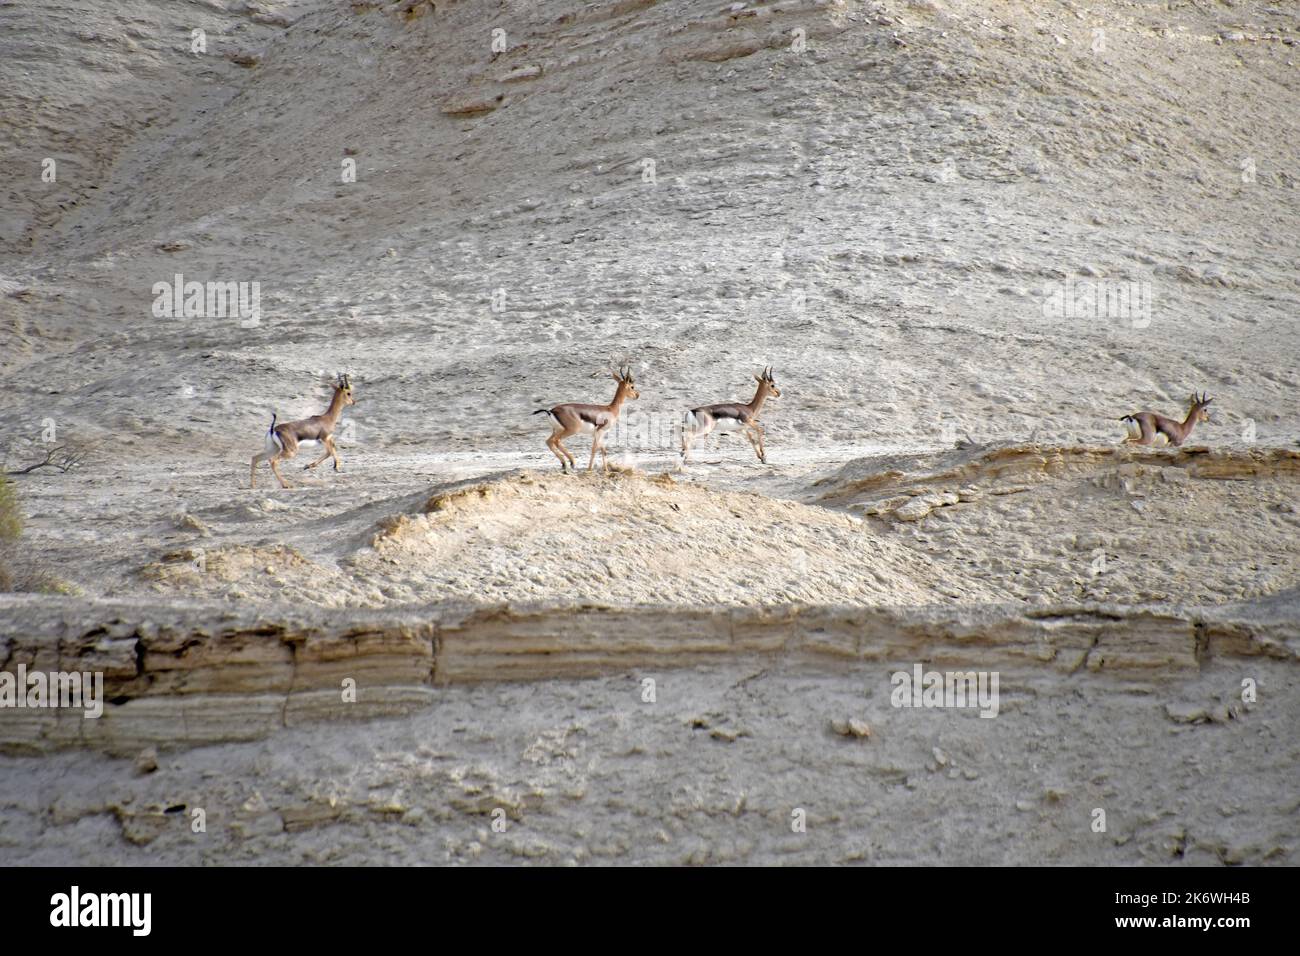 Gruppo gazzelle correre nel deserto Foto Stock